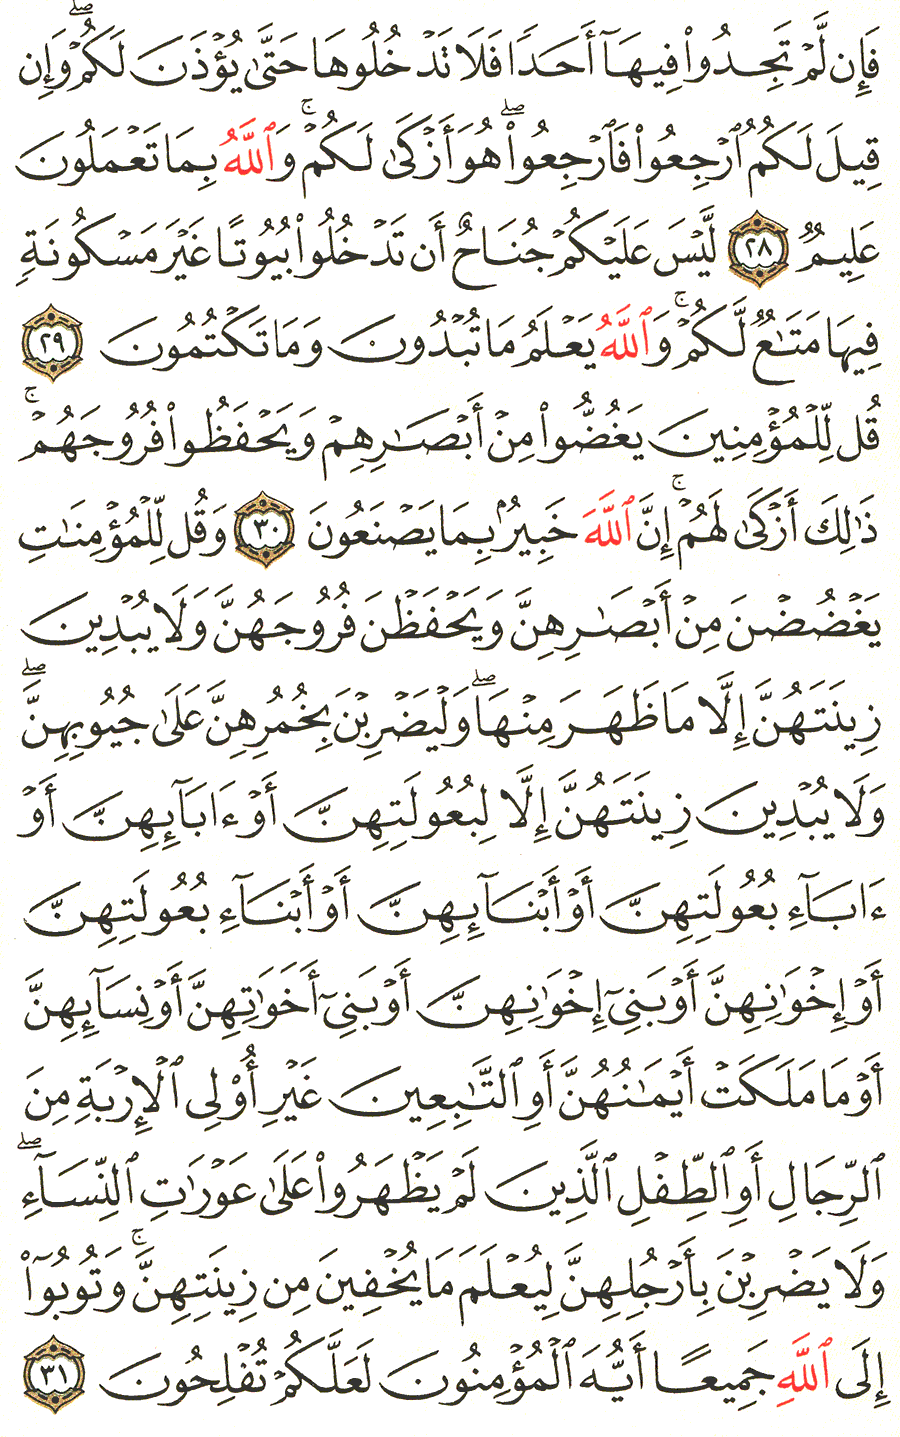 الصفحة 353 من القرآن الكريم